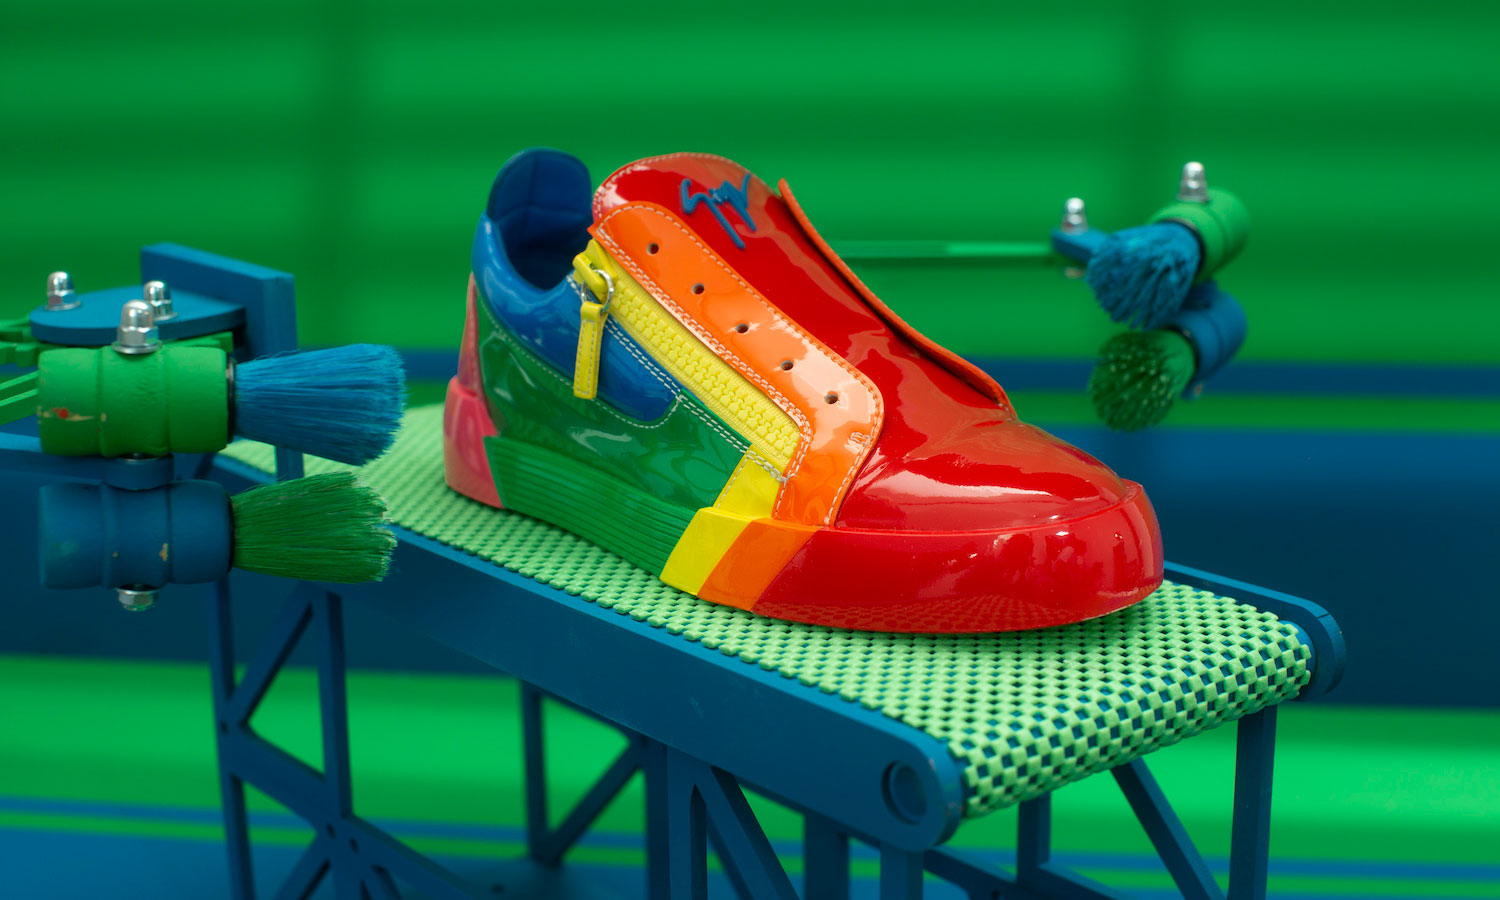 缤纷彩虹？Giuseppe Zanotti 推出新款运动鞋 “RNBW”